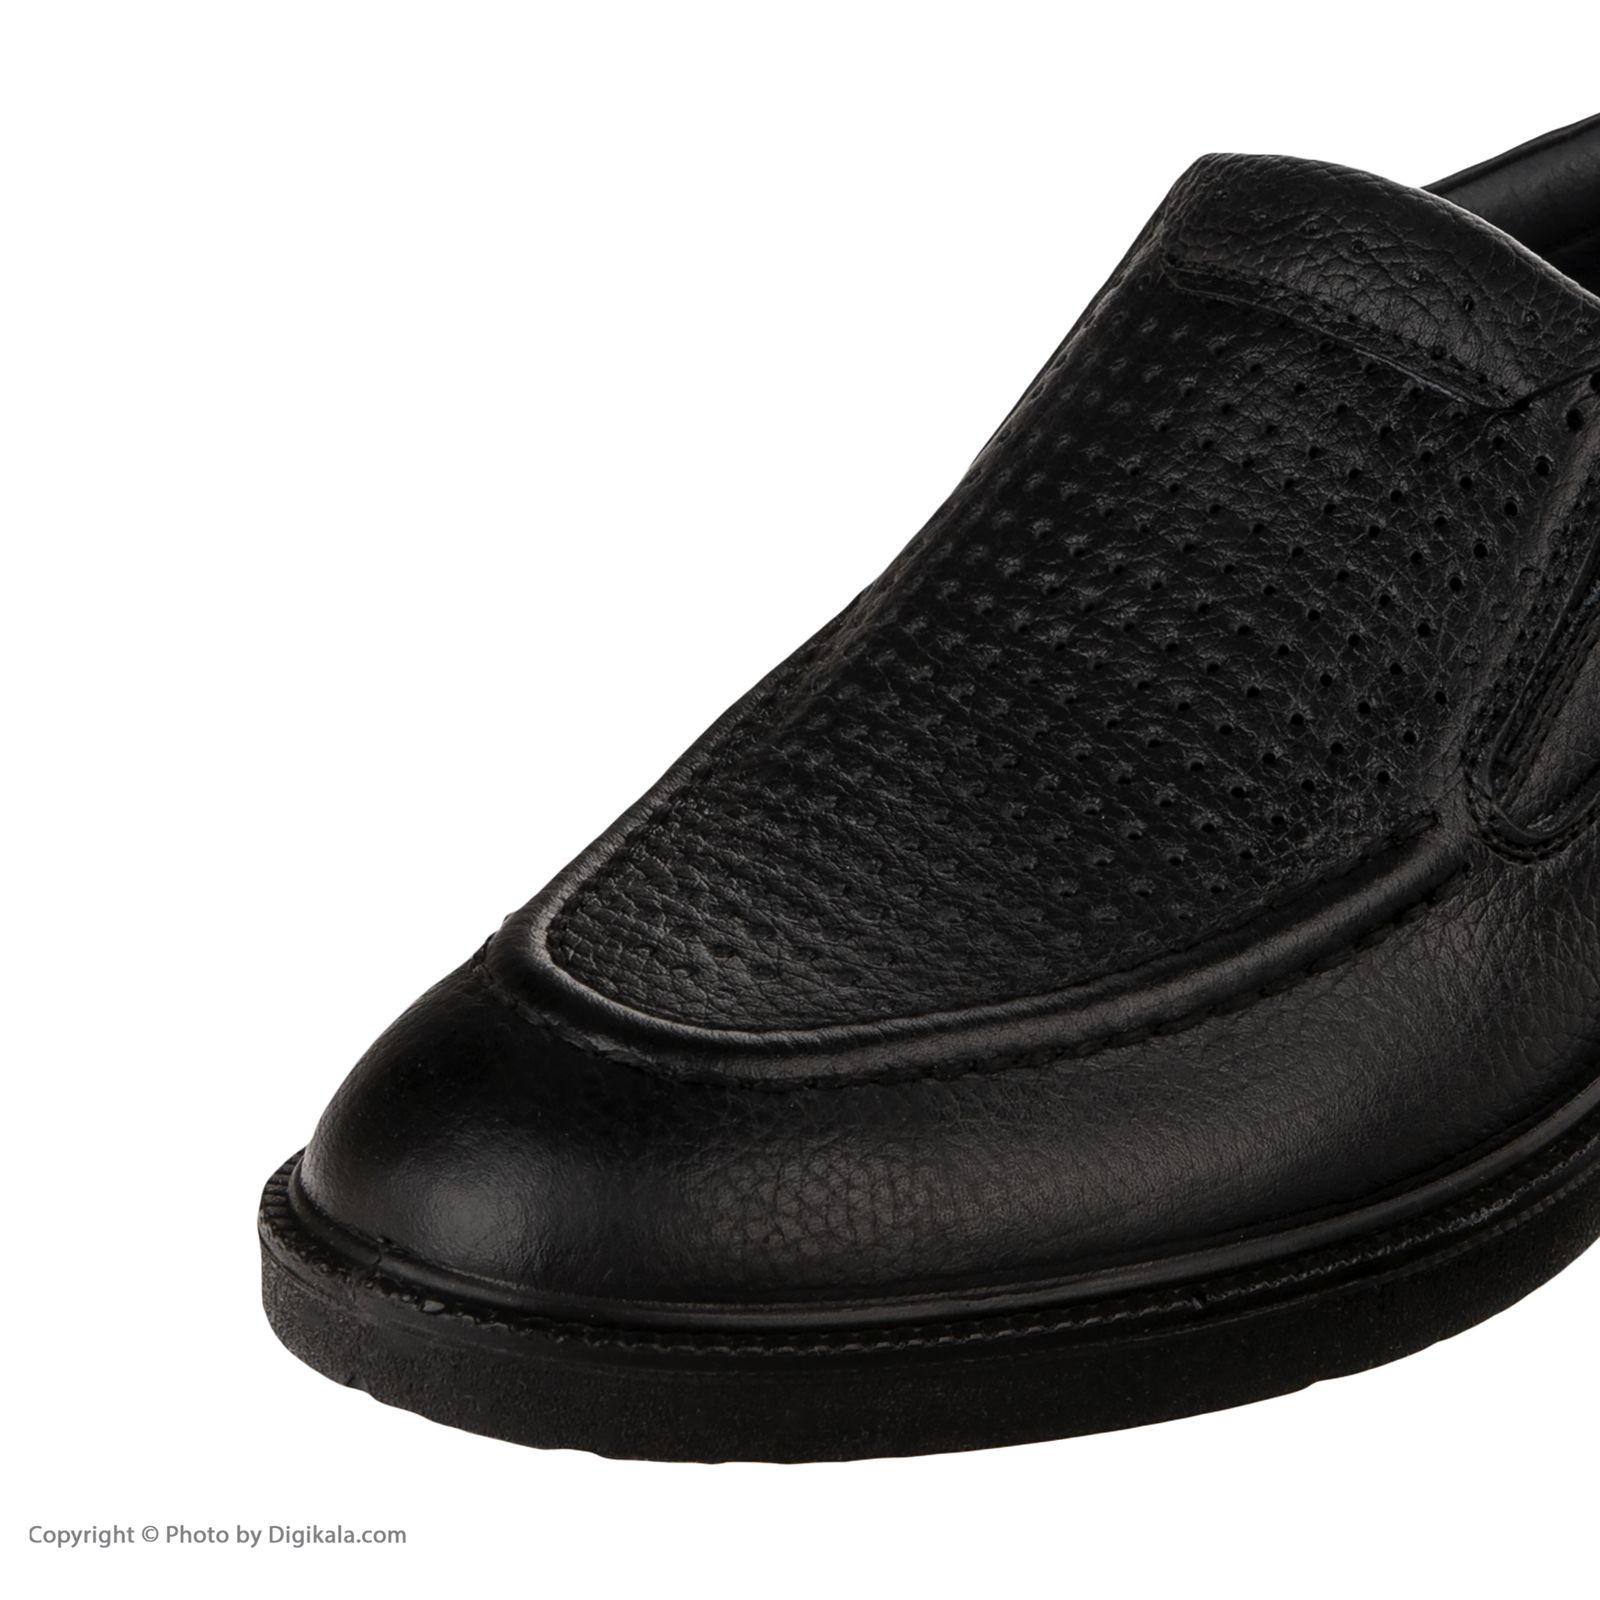 کفش مردانه شیفر مدل 7312f503101101 -  - 6